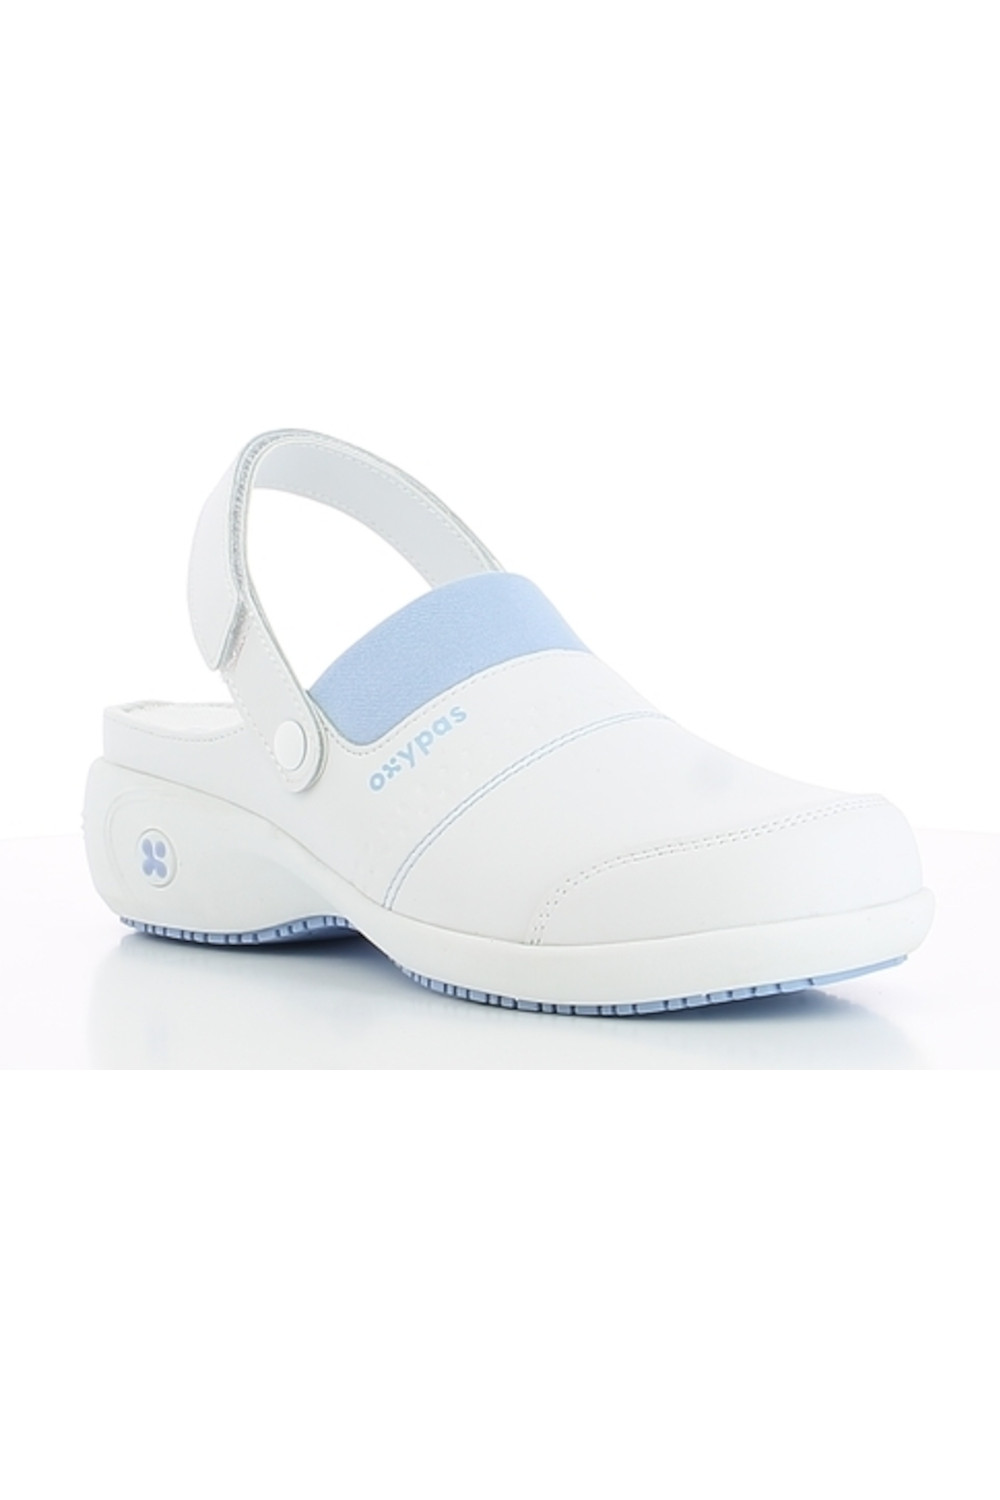 Buty damskie medyczne SANDY OXYPAS obuwie biały  z błękitem